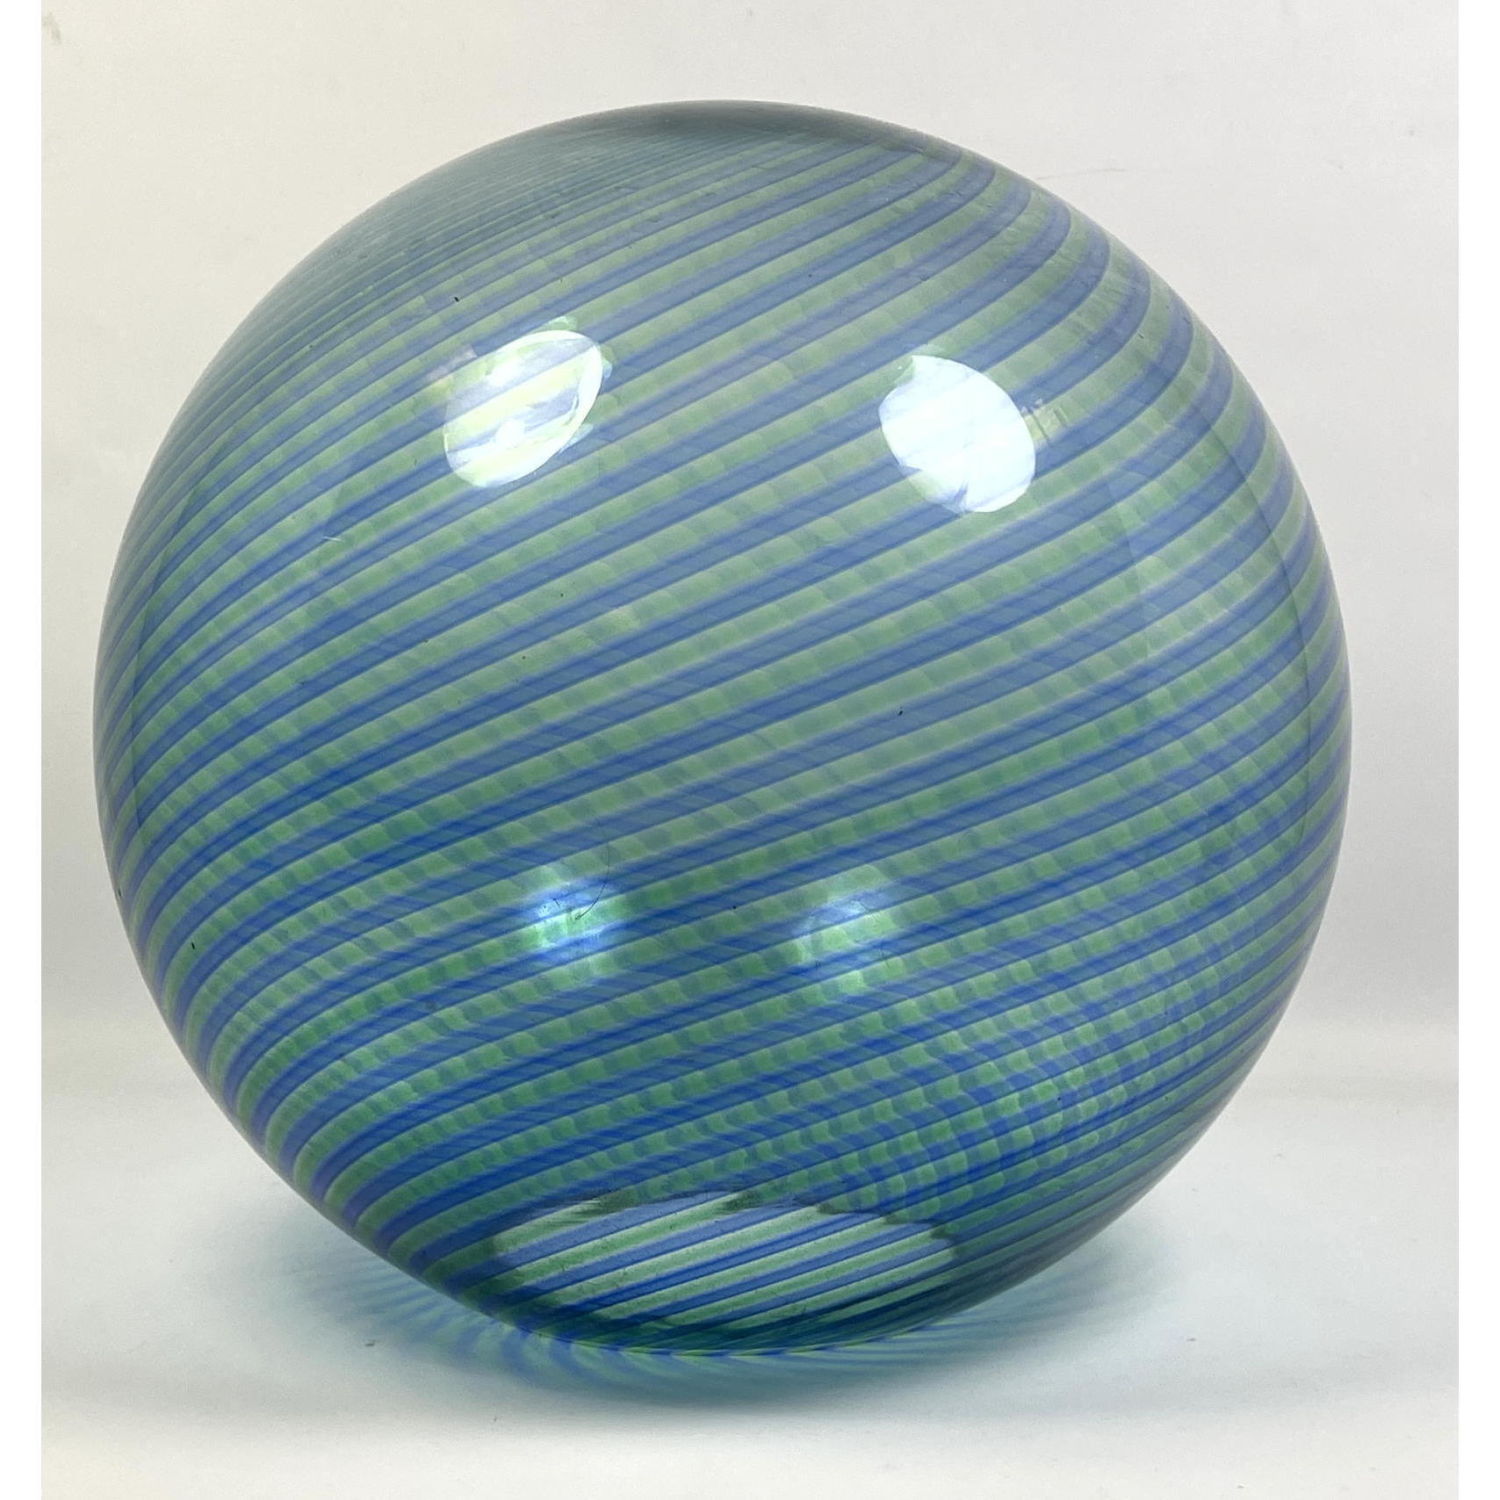 Large Murano Glass Ball Sculpture  2b9d52